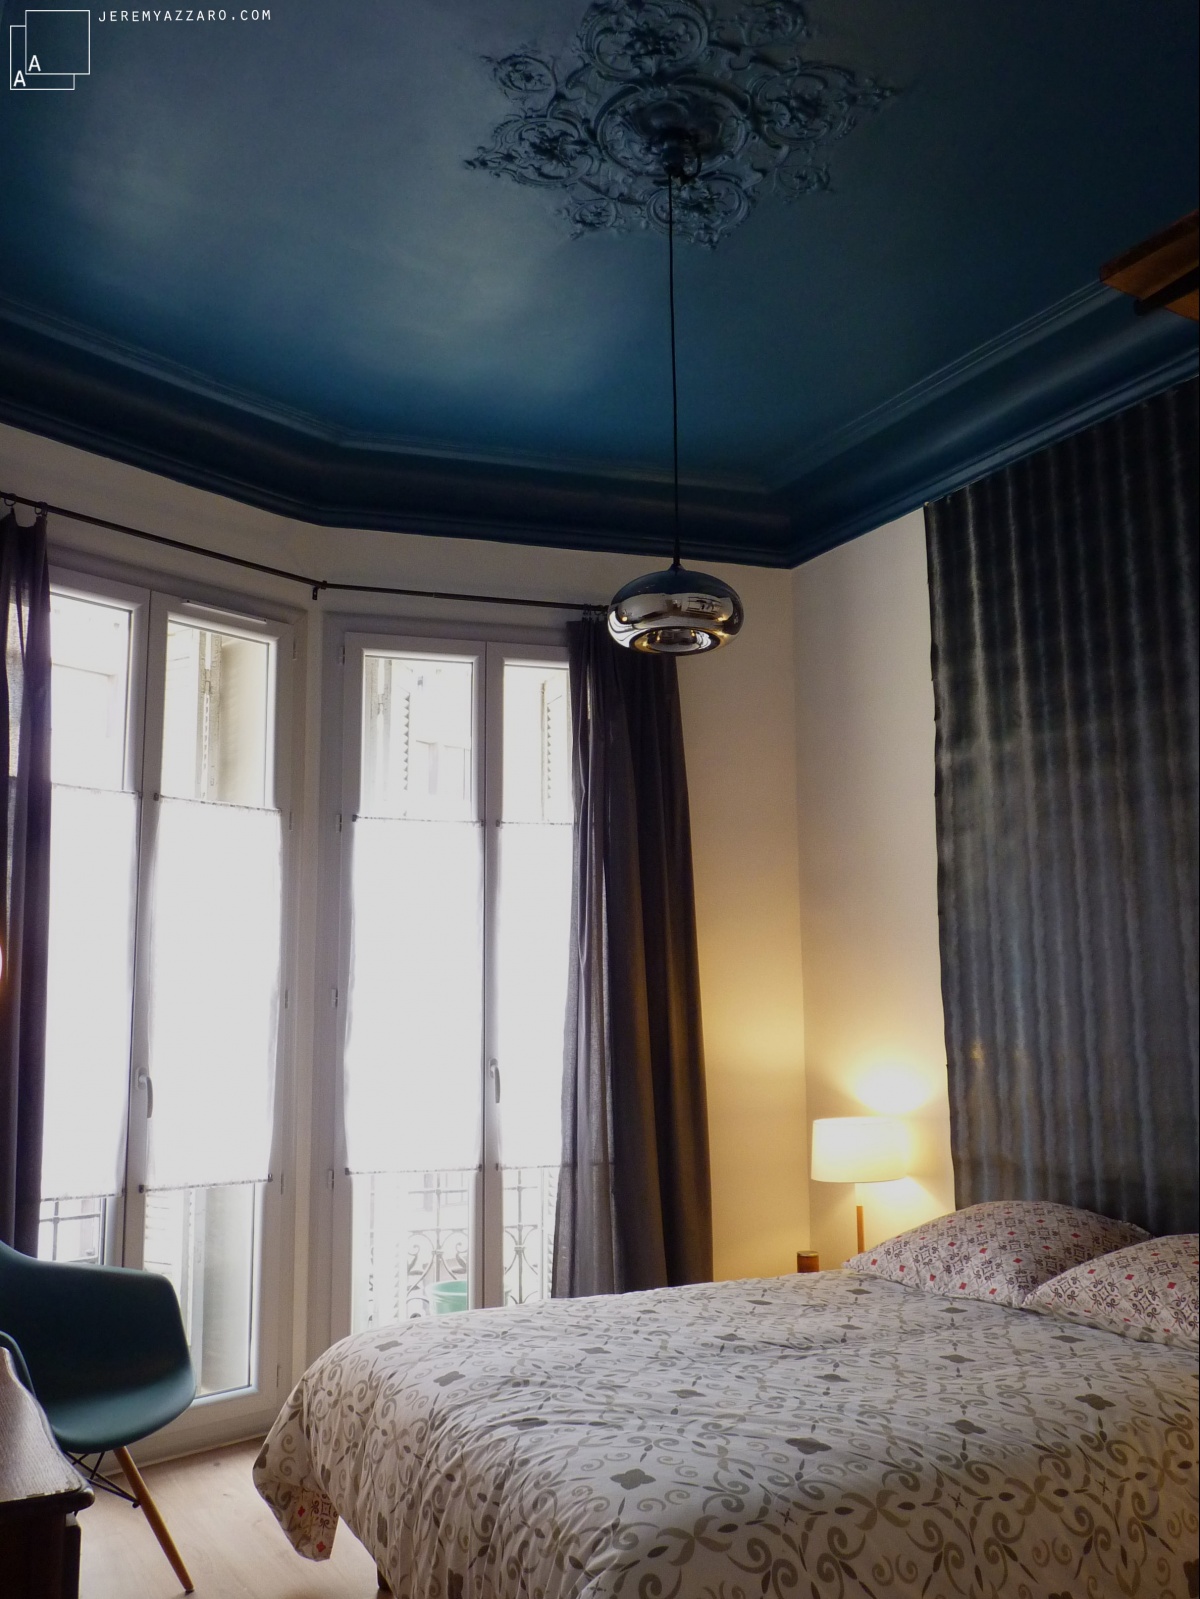 Rénovation d’un appartement « couleurs palais » : moulure-bleu-bourgeois-appartement-marseille-jeremy-azzaro-architecte-min